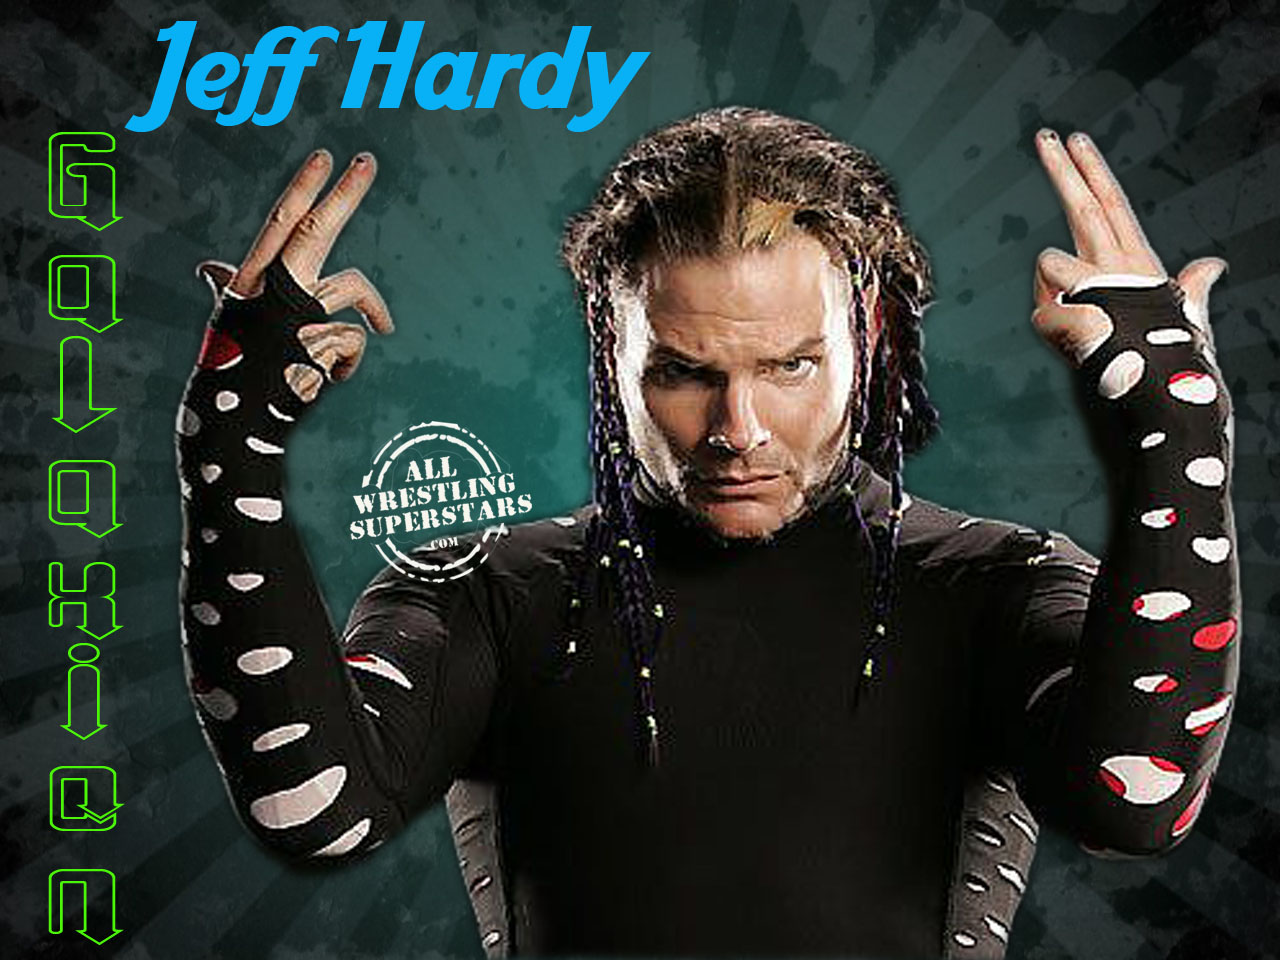 Wwe Wrestling Champions Jeff Hardy Wallpaper